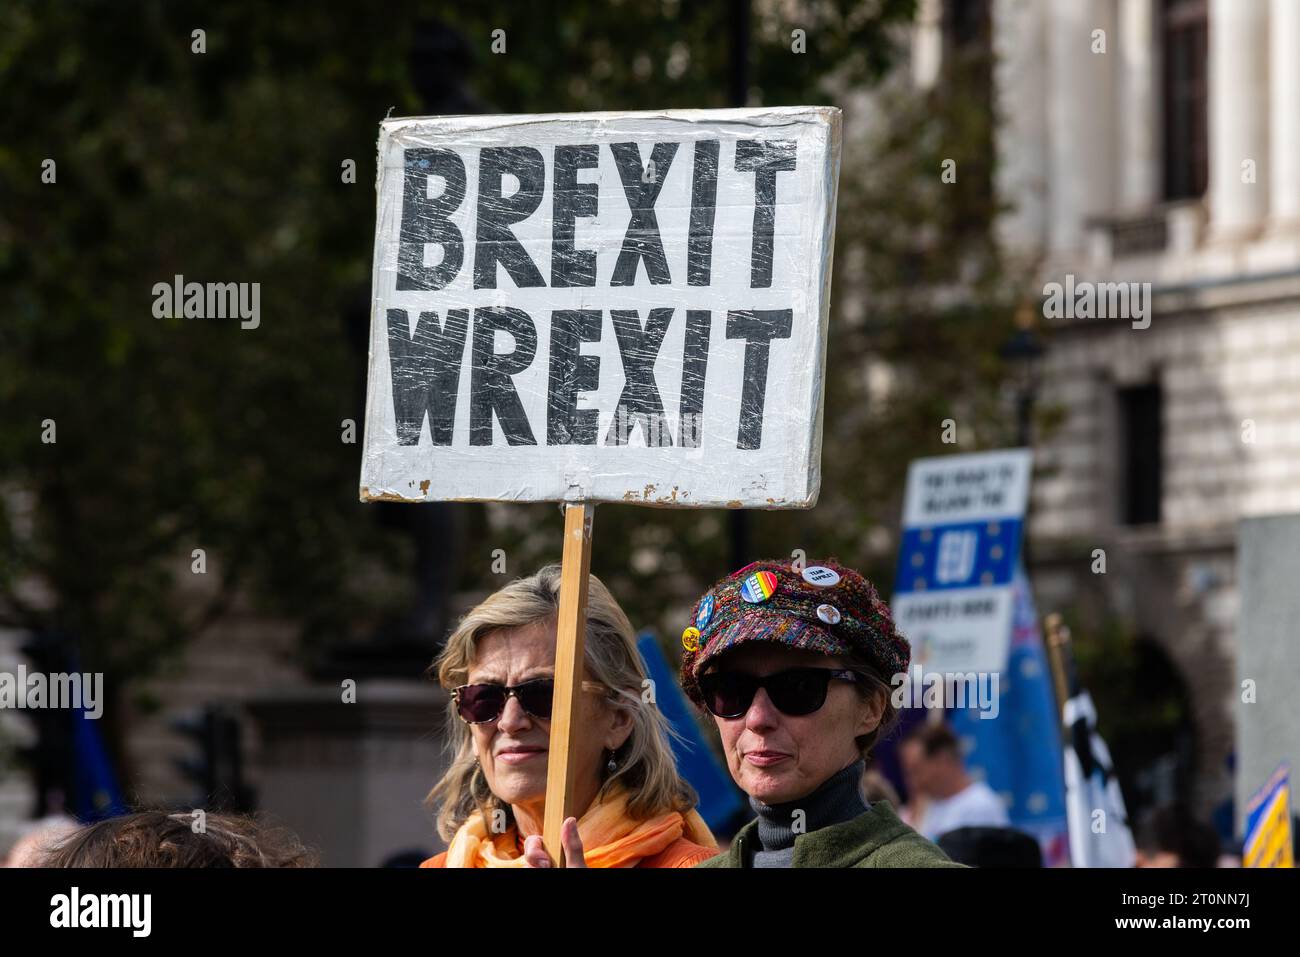 Pancarte Brexit Wrexit au National Rejoin March II à Londres, Royaume-Uni. Rassemblement de protestation pour que le Royaume-Uni rejoigne l'Union européenne. Jouez sur Wrecks IT text Banque D'Images